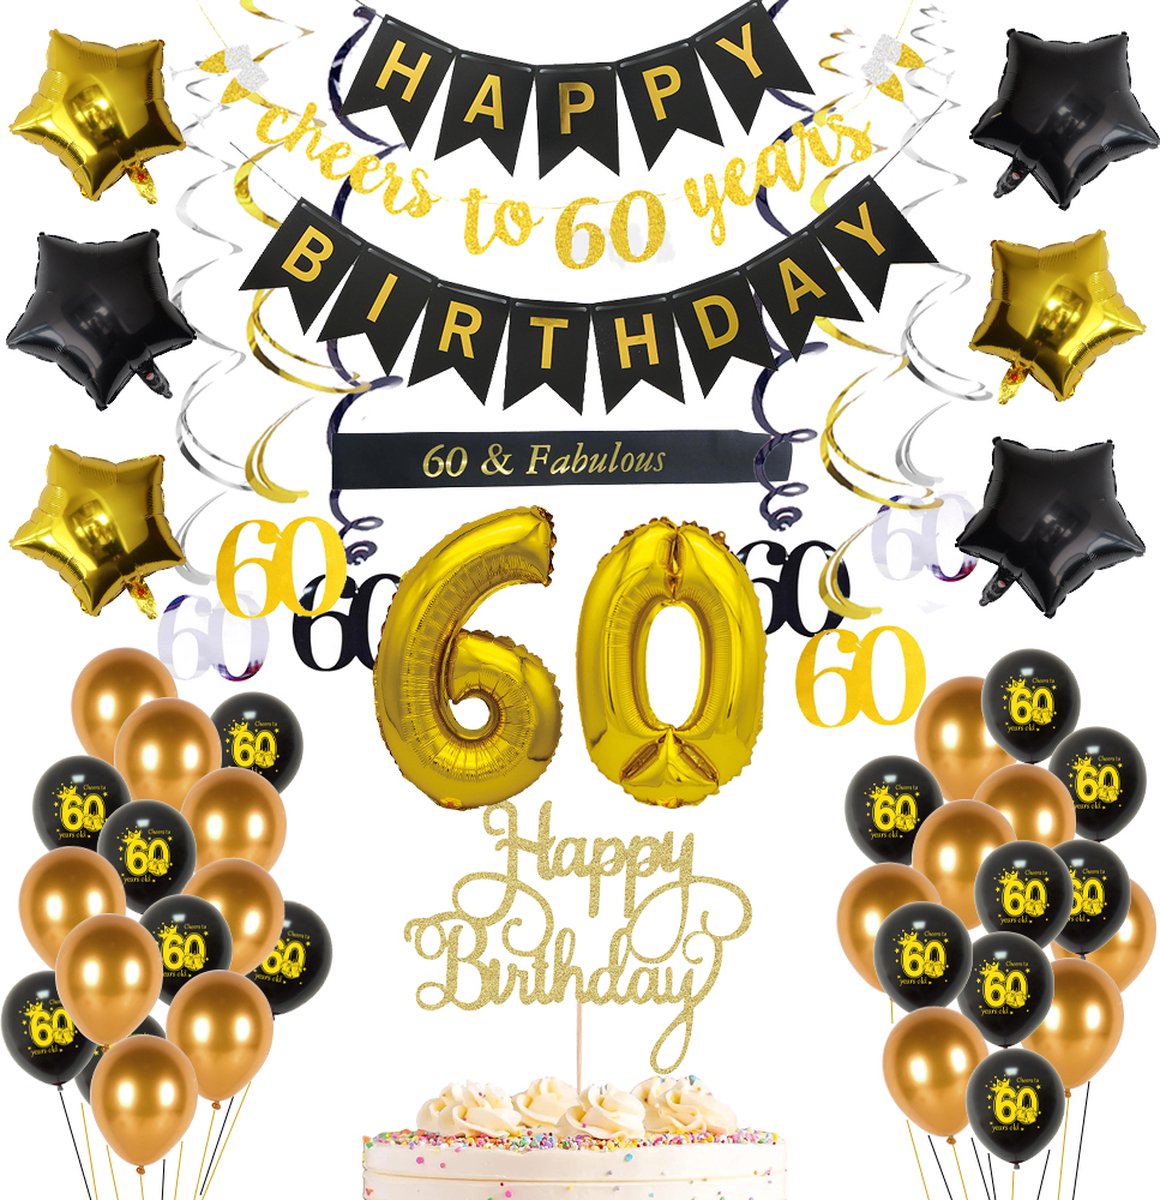 60 jaar verjaardag versiering - happy birthday slinger - compleet met ballonnen - grote 60 ballon - folie sterren - 60 jaar verjaardag slinger - gouden zwarte decoratie verjaardag decoratie